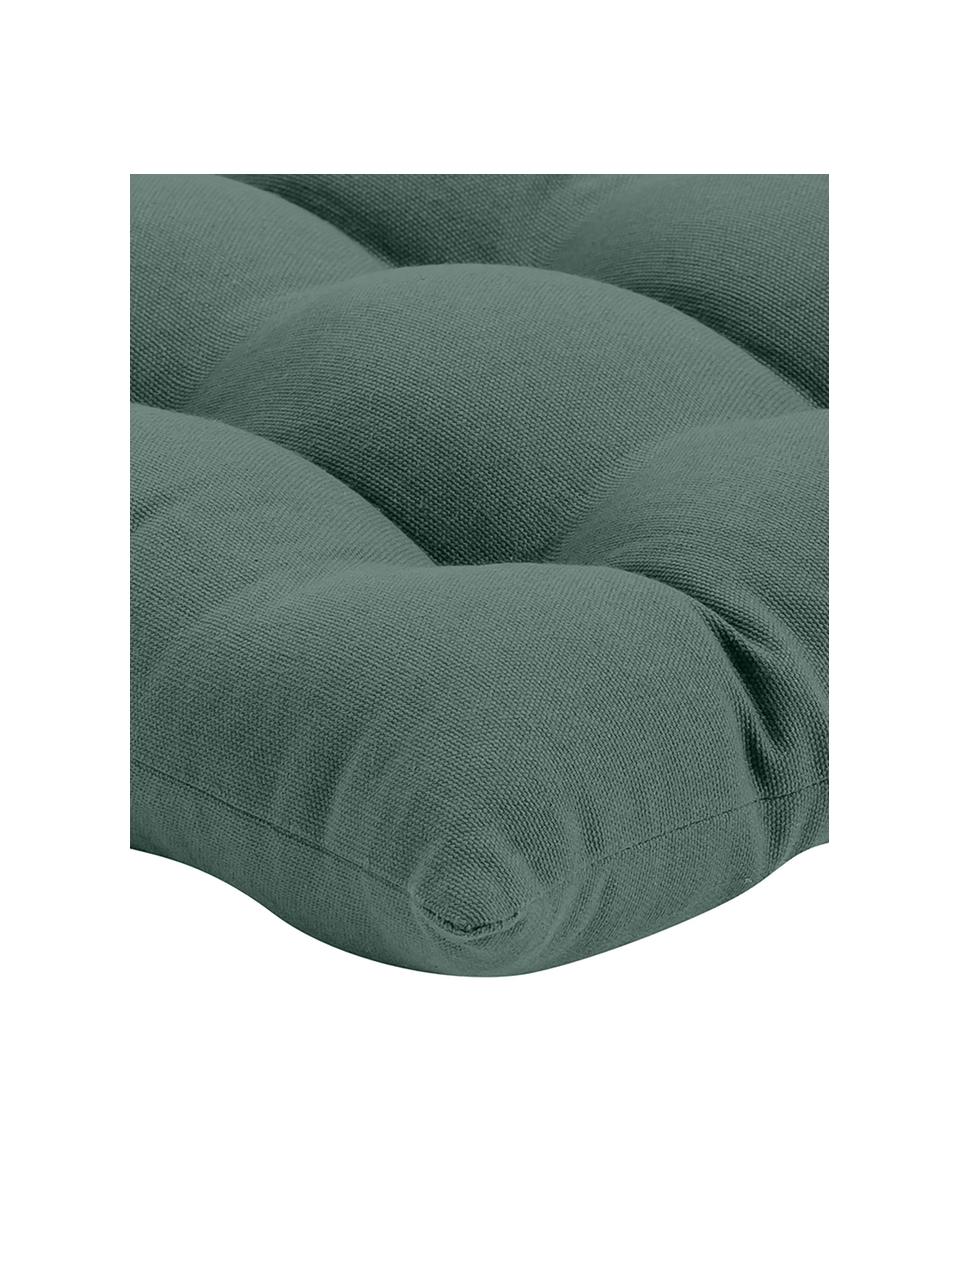 Poduszka na krzesło z bawełny Ava, Ciemny zielony, S 40 x D 40 cm